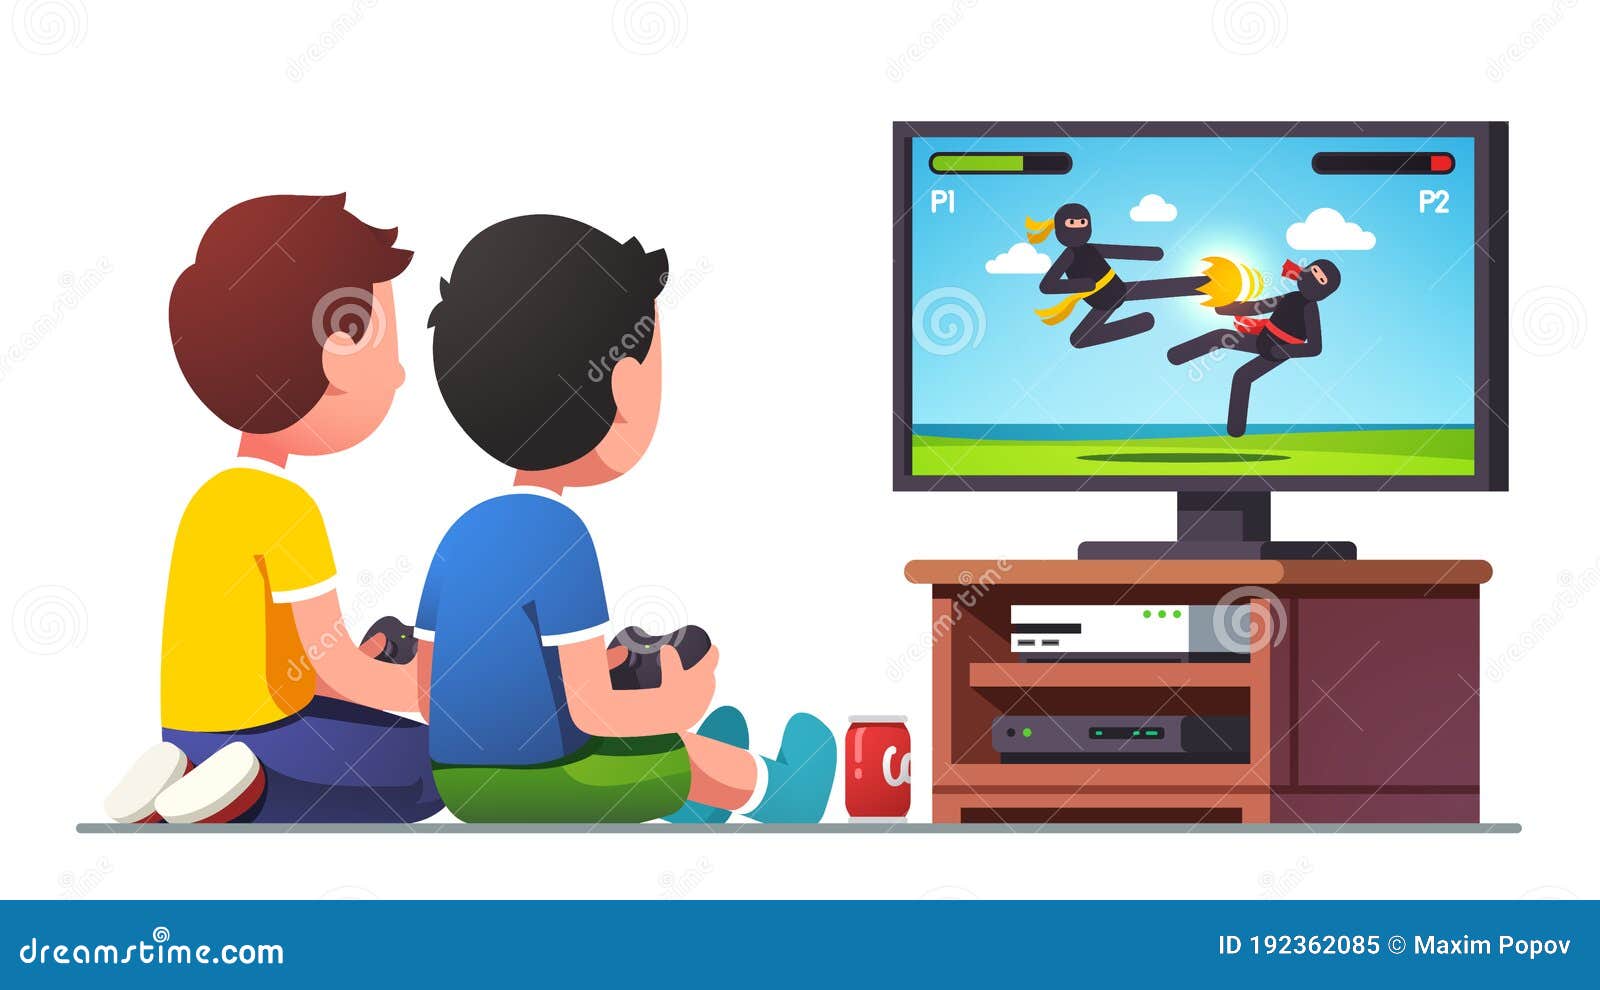 Console de videogame Criança, Menino de desenho simples, jogando videogame,  televisão, jogo, computador png